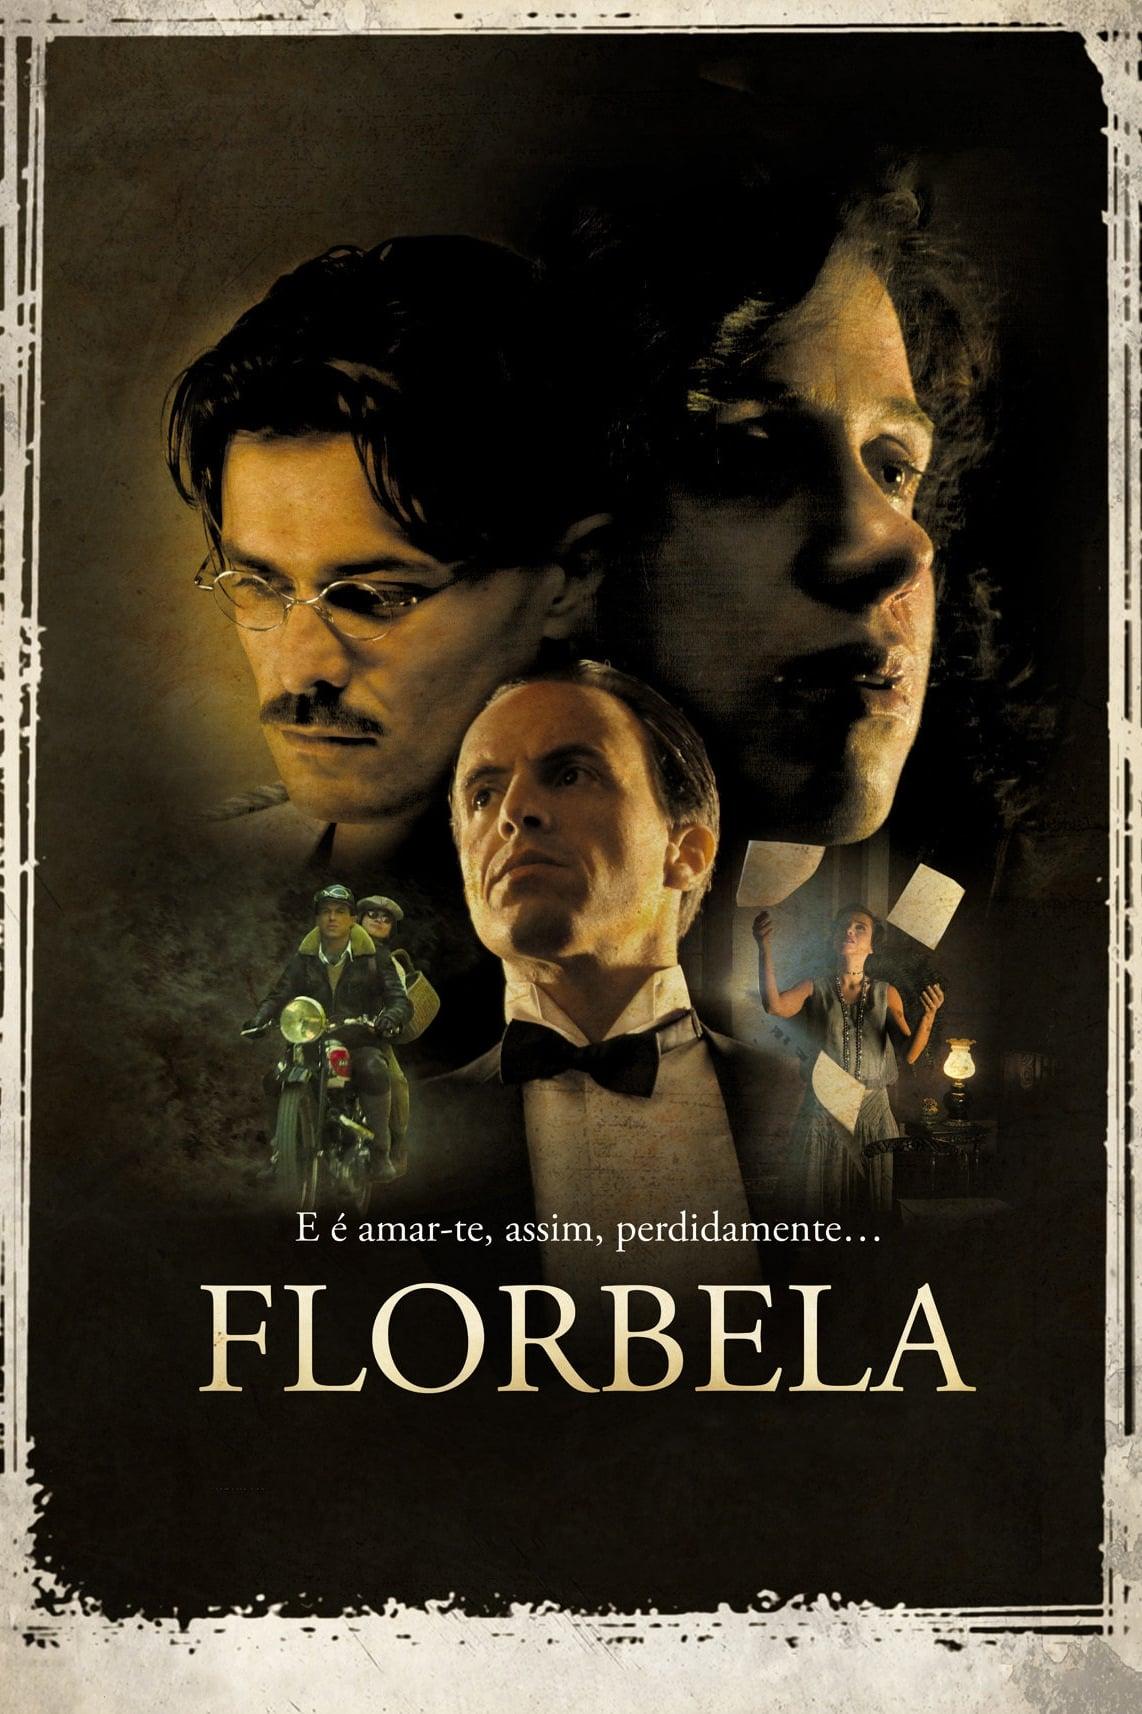 Florbela poster